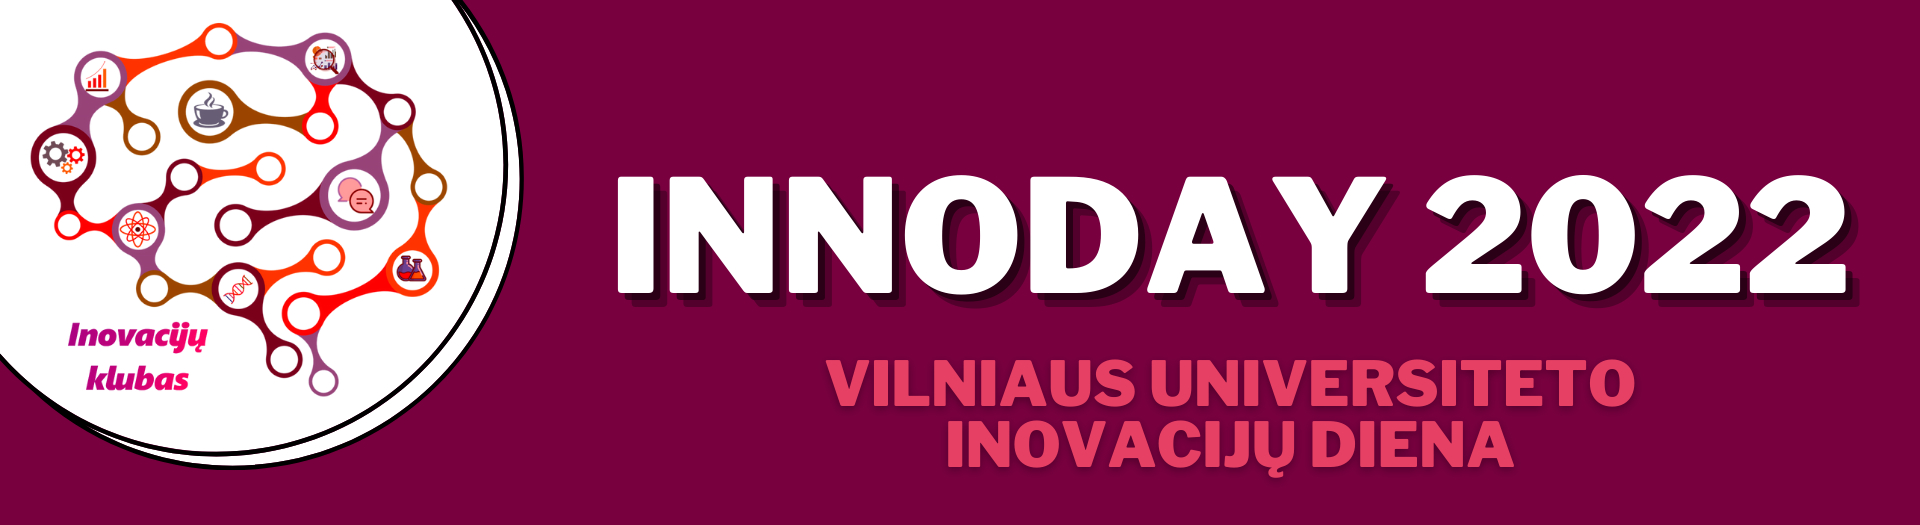 Vilniaus universiteto Inovacijų diena INNOday 2021 11